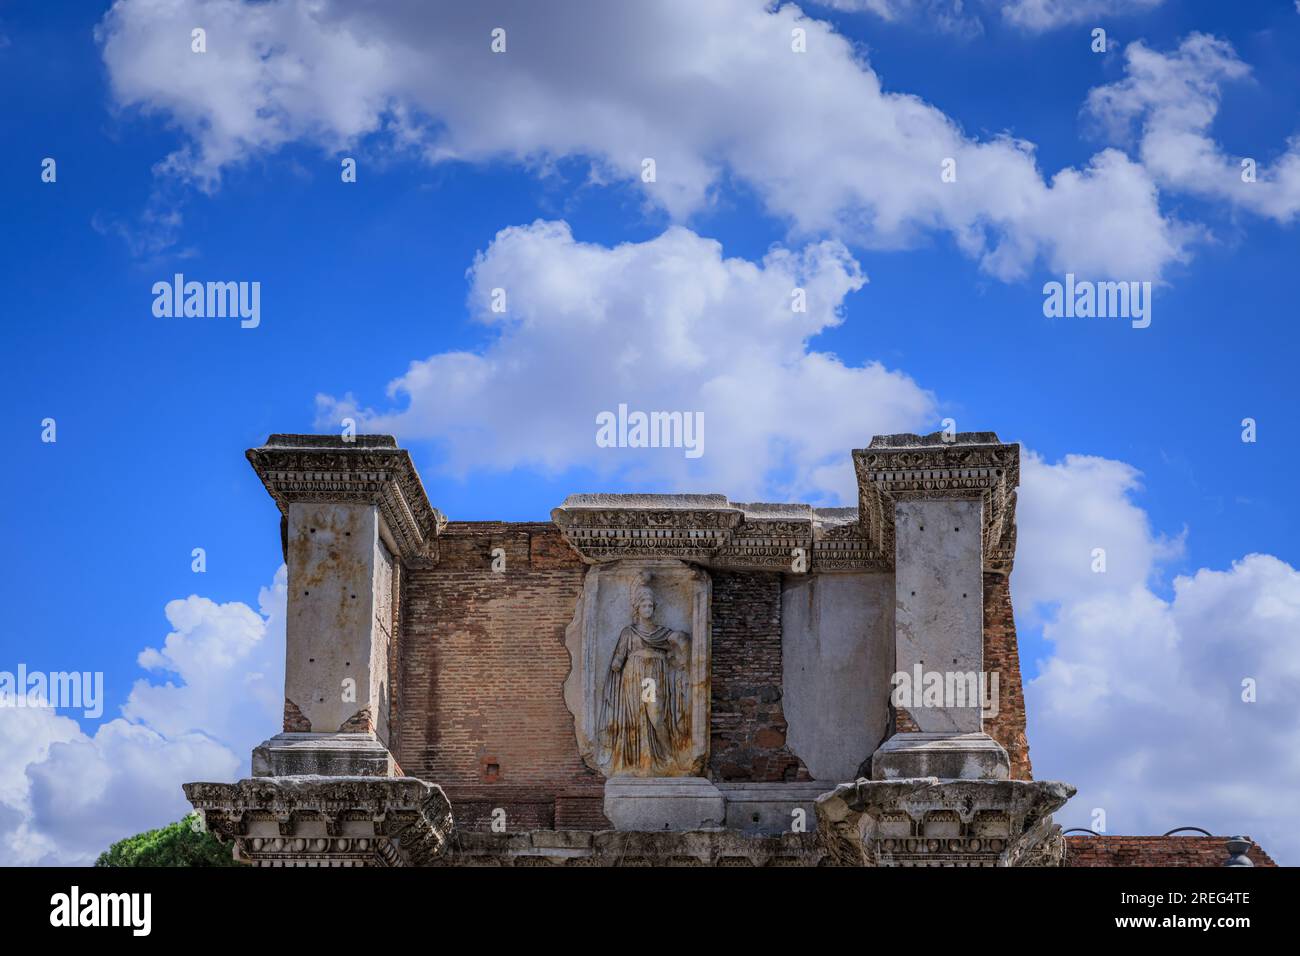 Le Forum de Nerva à Rome, Italie : vue de la Colonnacce. Banque D'Images